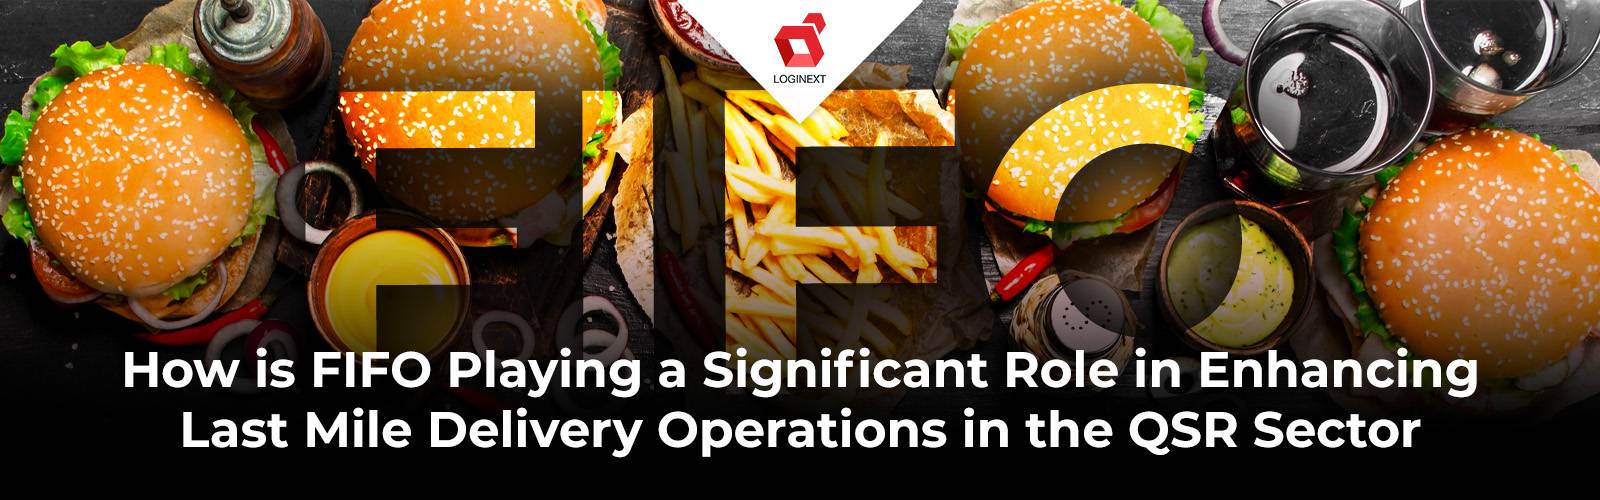 كيف يلعب FIFO دورًا مهمًا في تعزيز عمليات تسليم الميل الأخير في قطاع مطاعم الخدمة السريعة